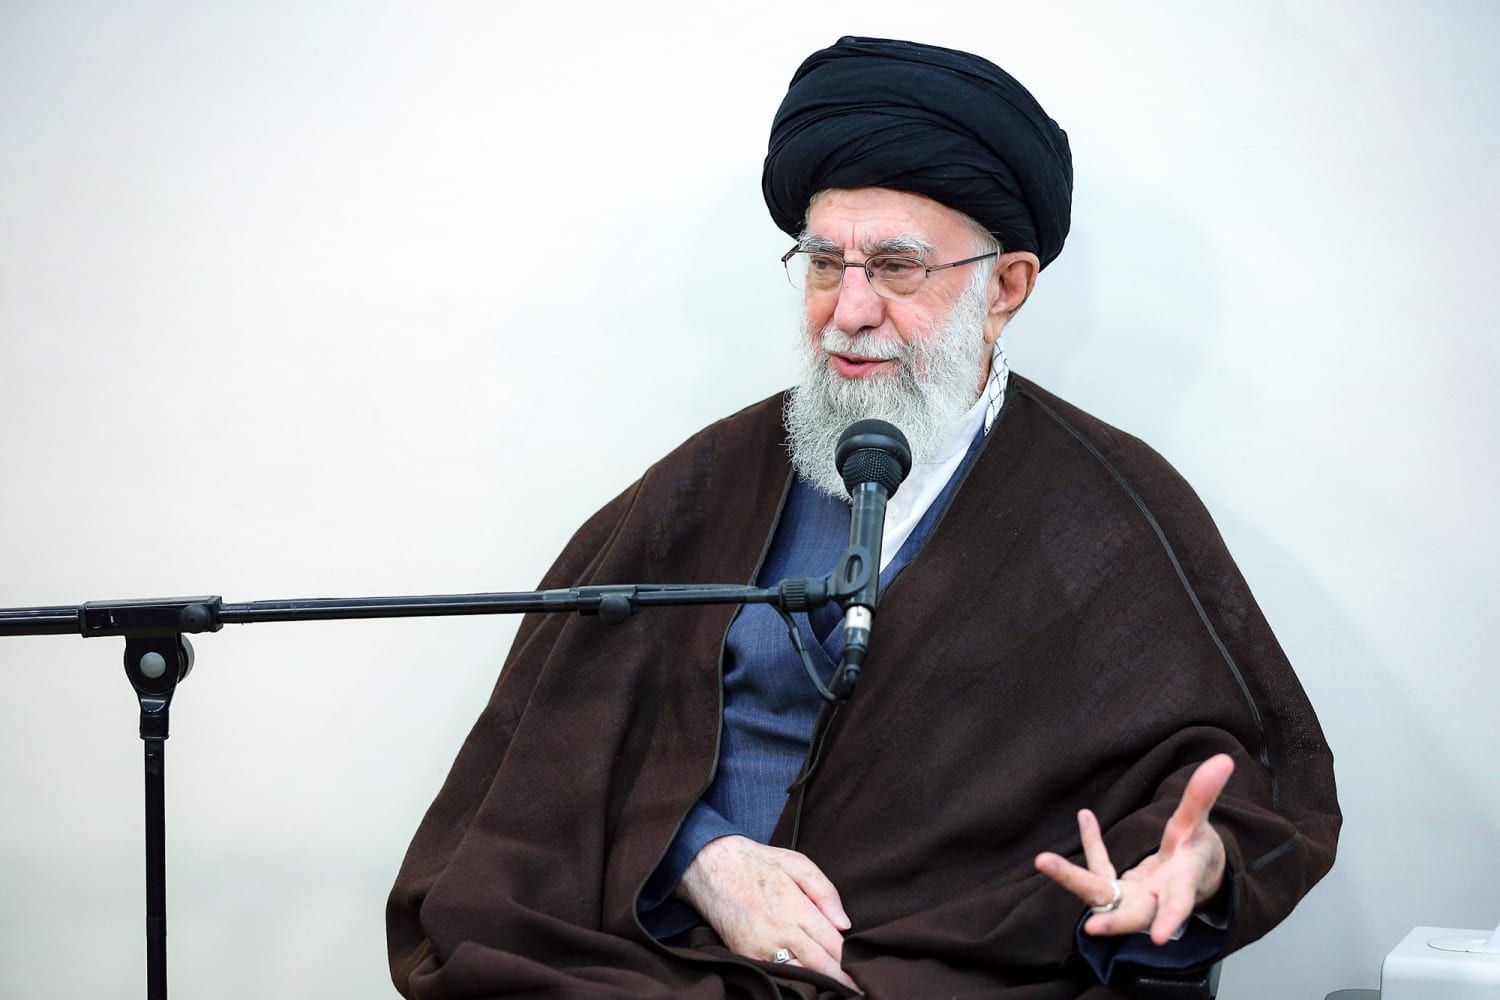 وقد اعترف المرشد الأعلى الإيراني ضمنا بأن طهران أخطأت في هجومها على إسرائيل.